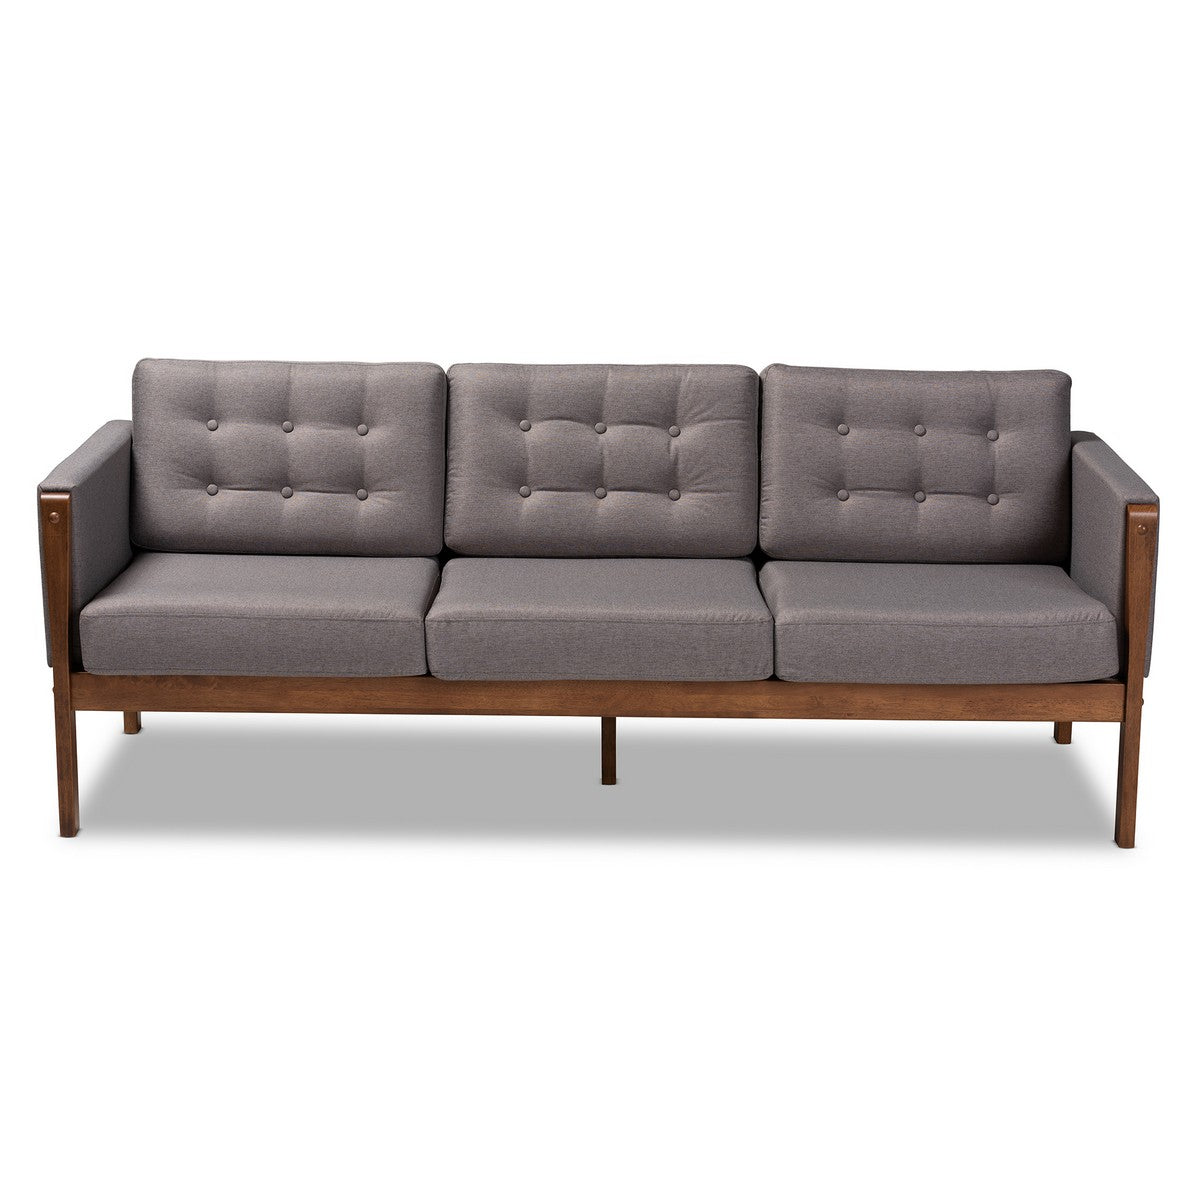 Baxton Studio Lenne Mid-Century Modern Grey Fabric Upholstered Walnut Finished Sofa